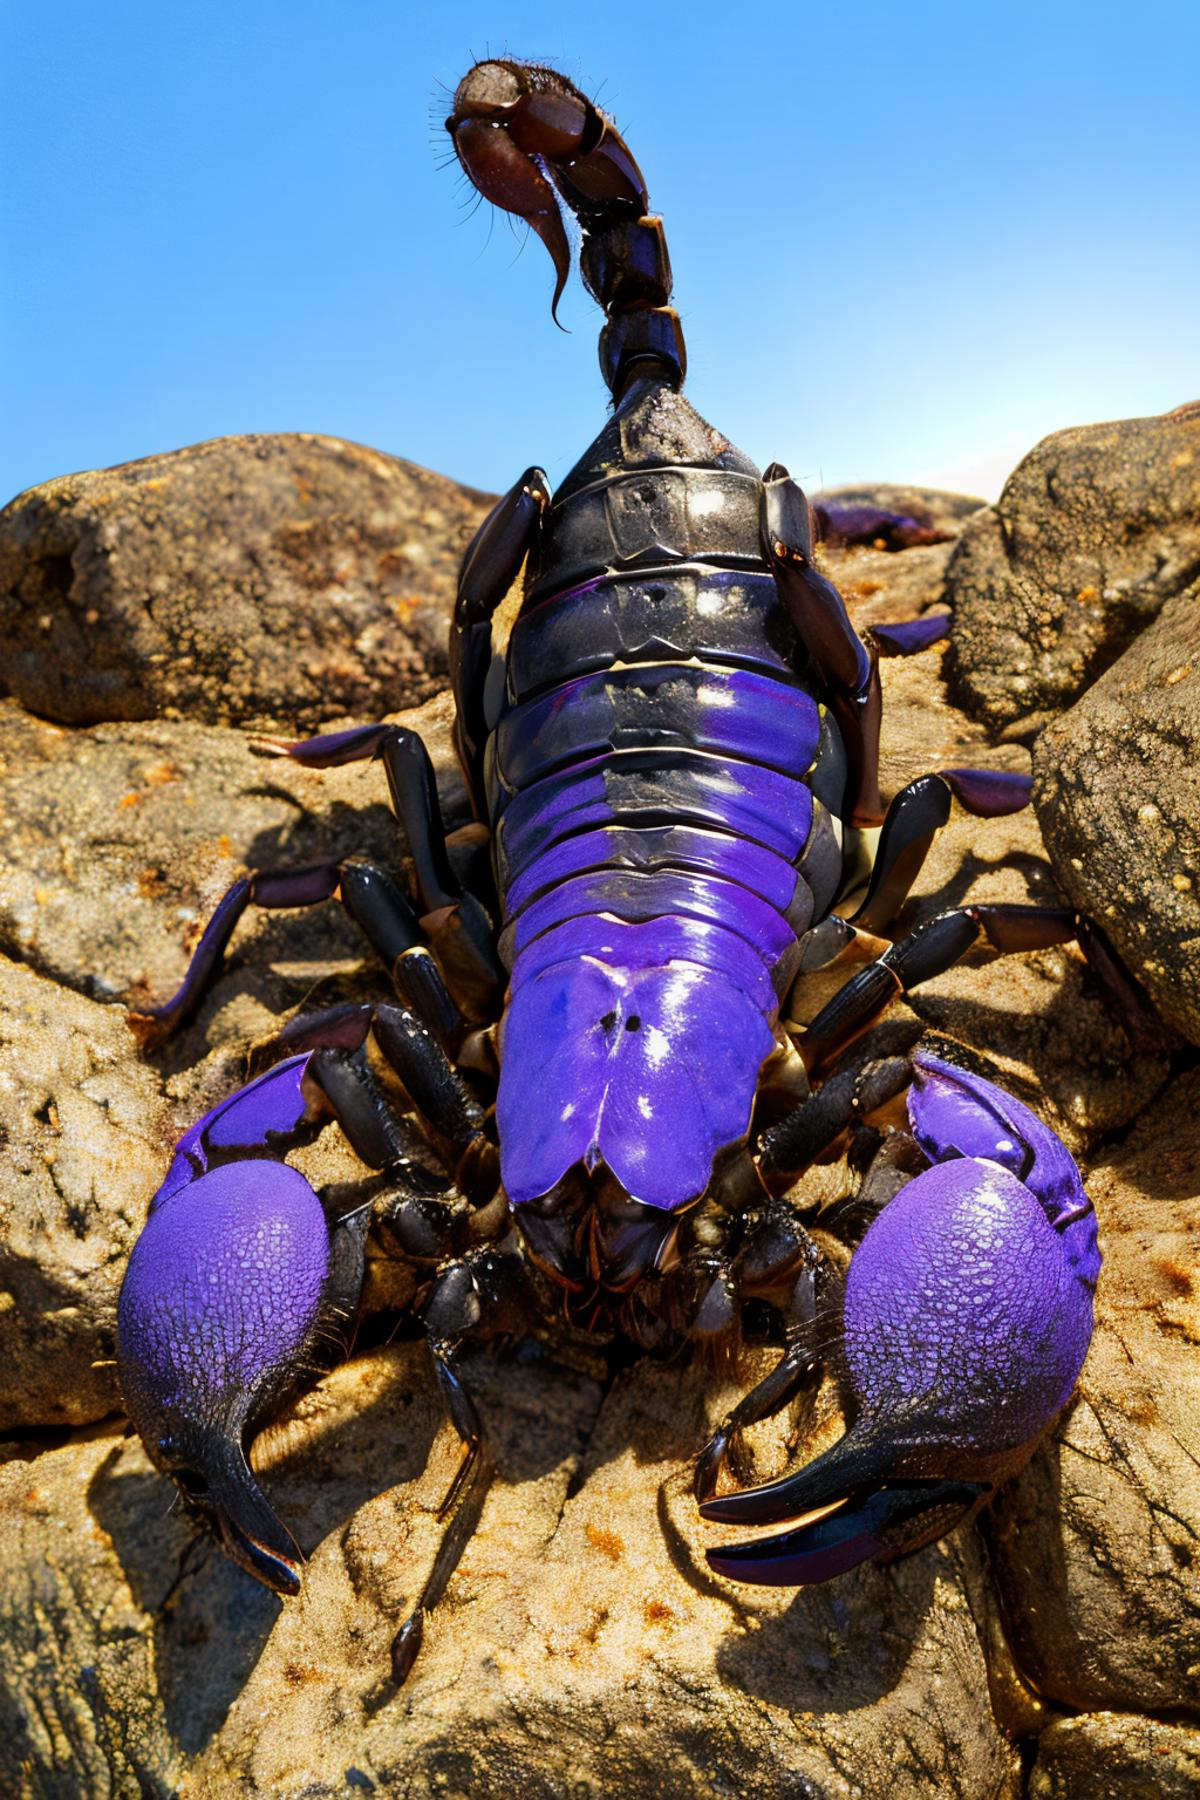 Edob Scorpion image by edobgames